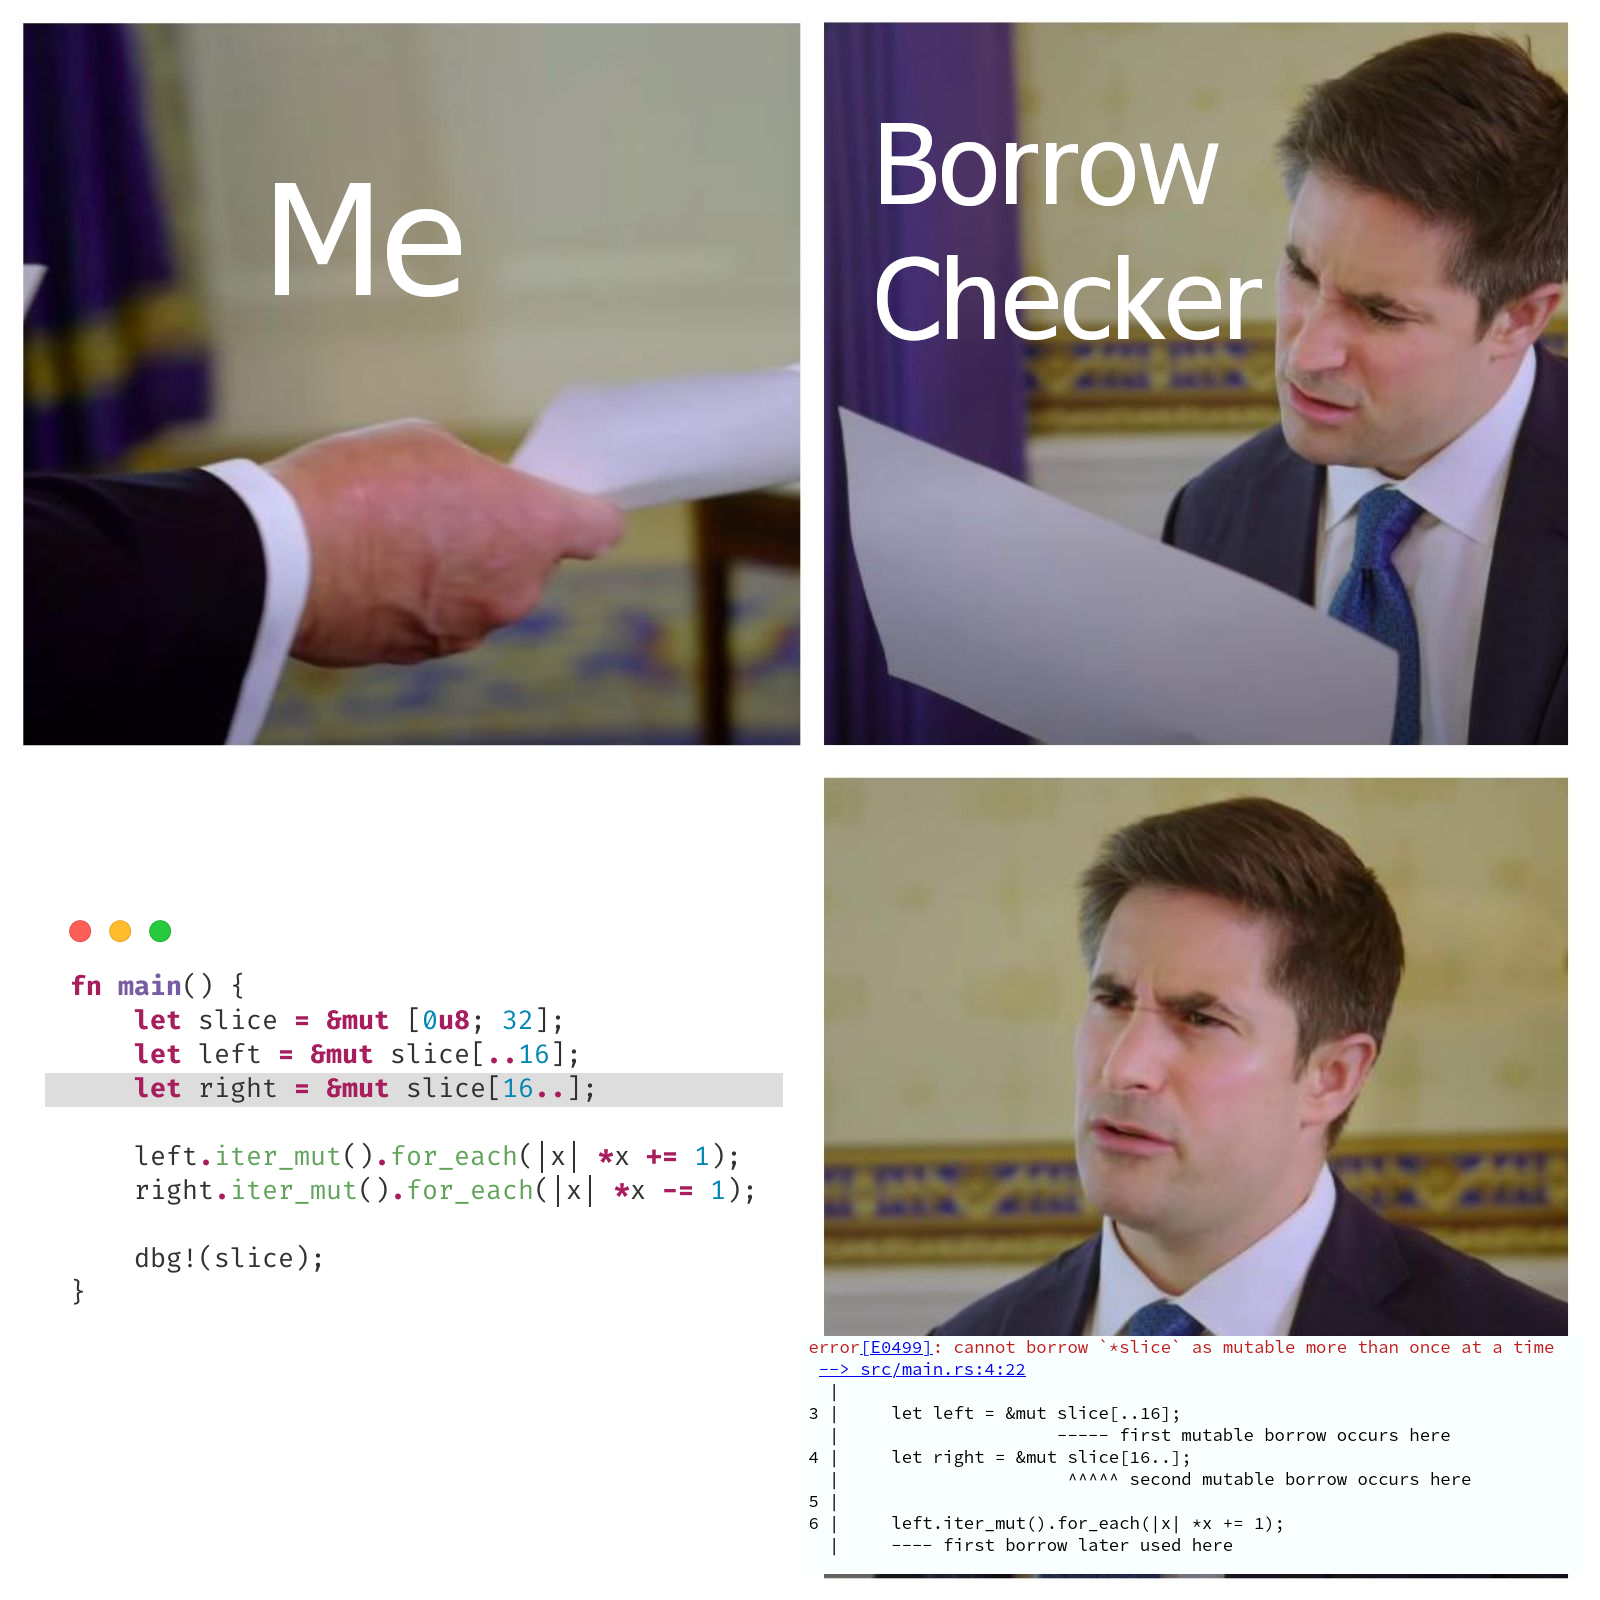 Borrow checker